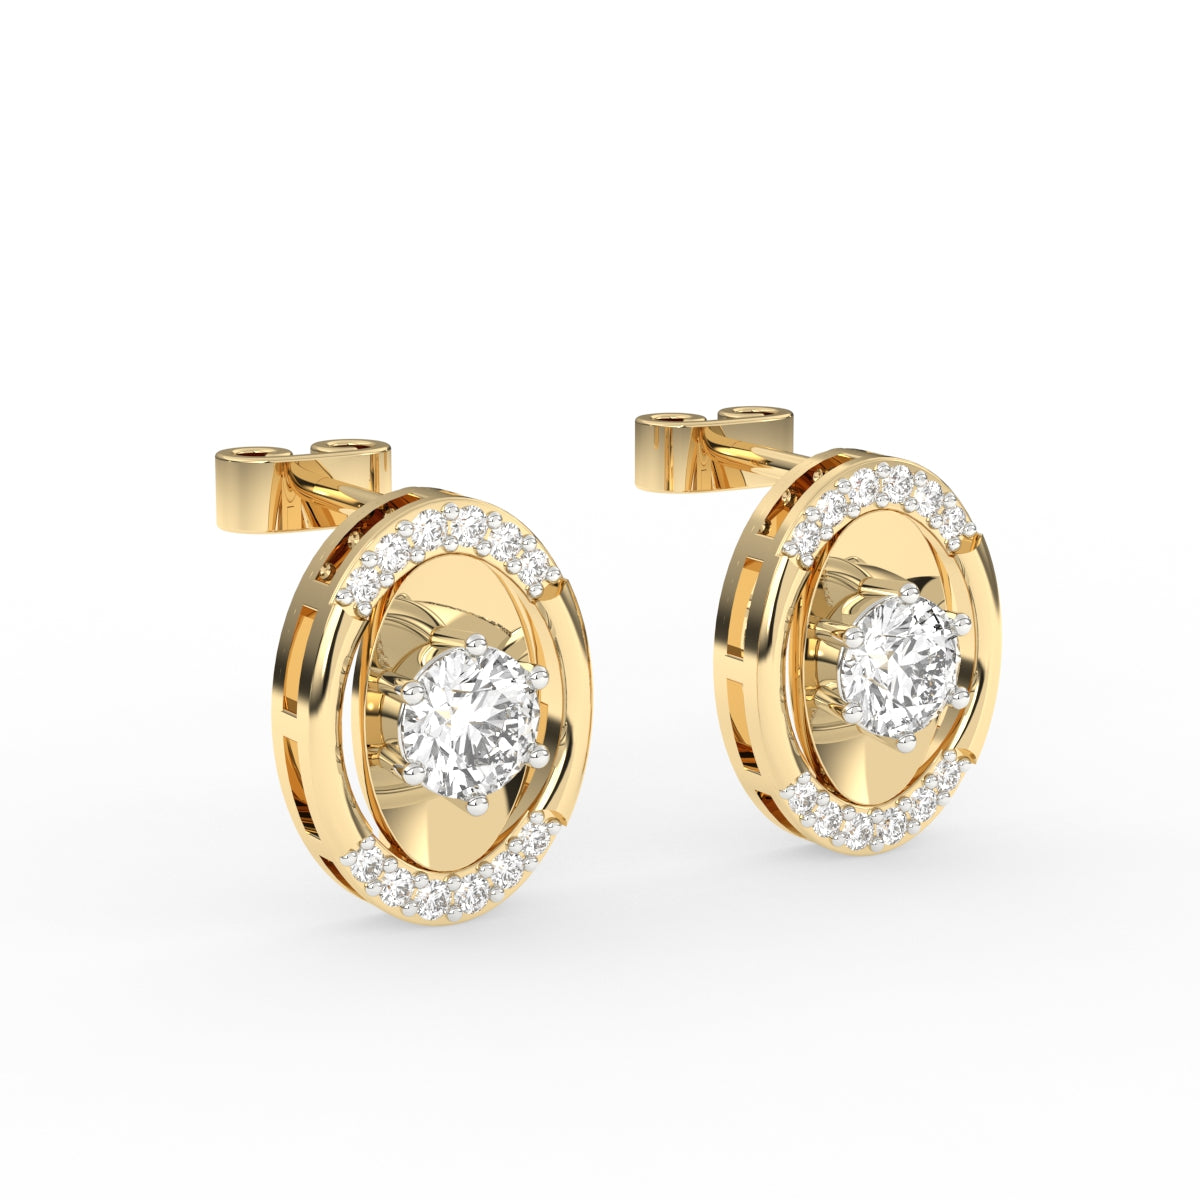 Ornate Floral Diamond Stud Earrings Jewellery India Online - CaratLane.com